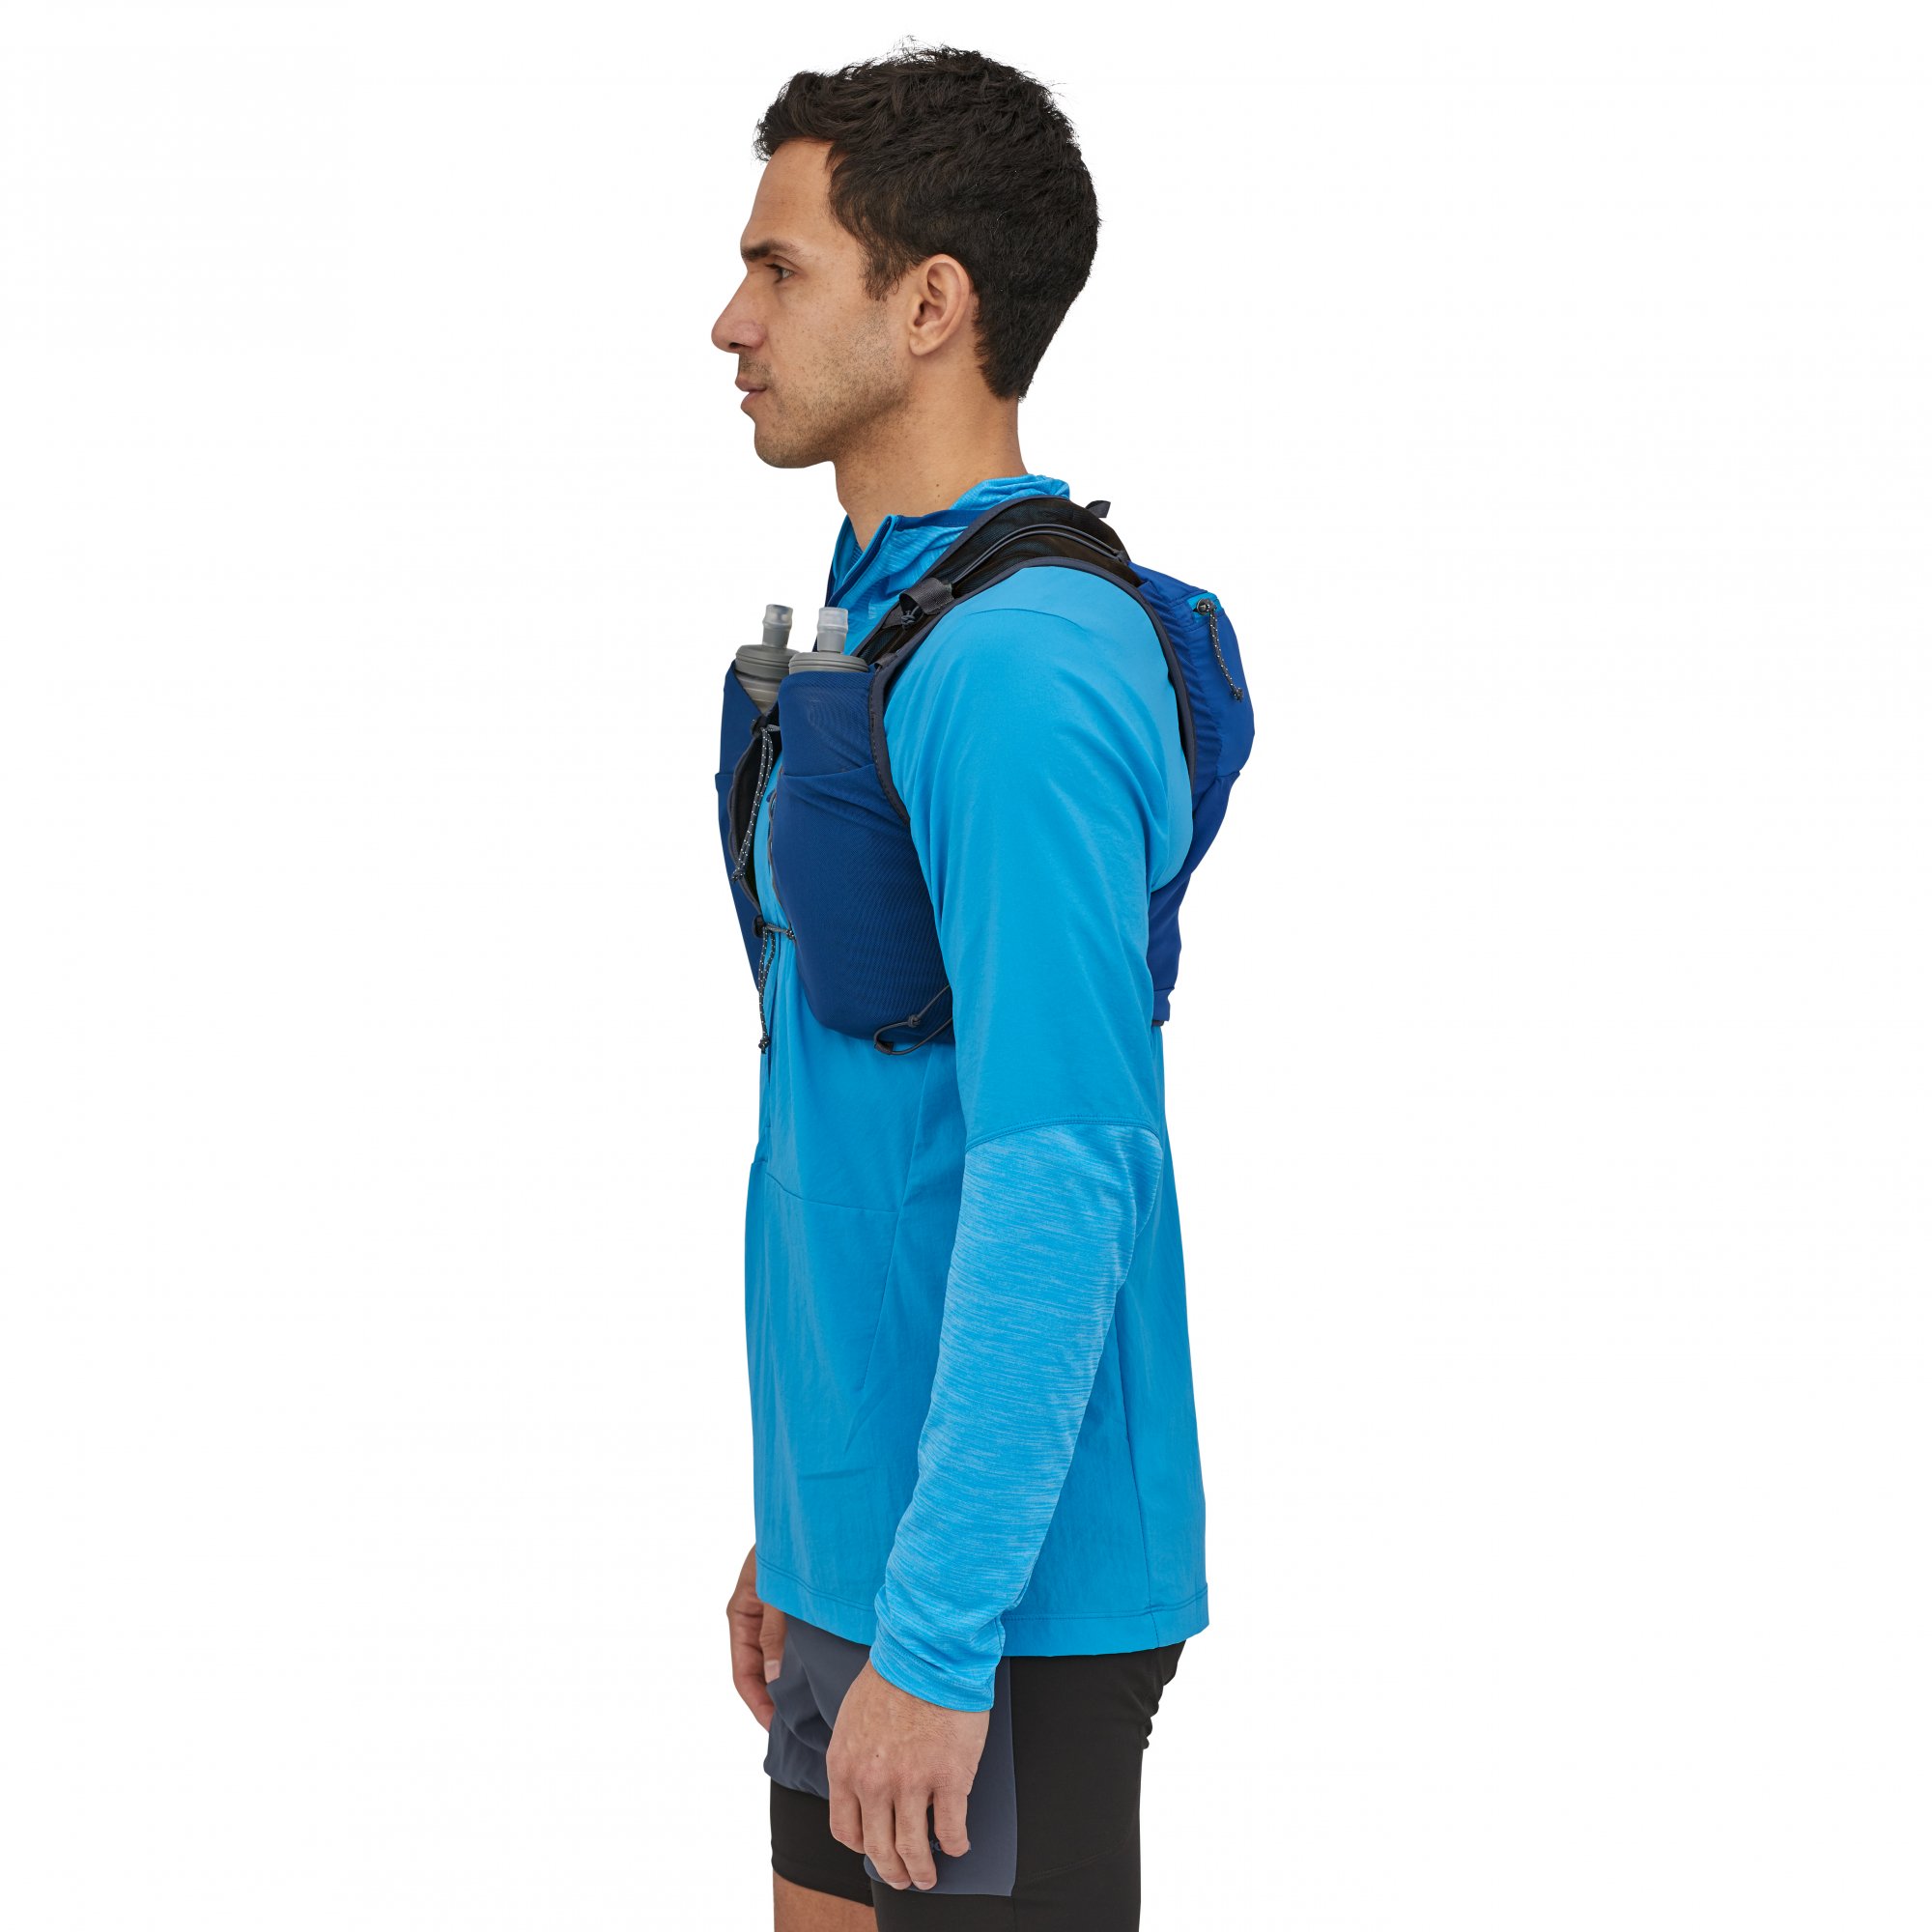 PATAGONIA Slope Runner Endurance Vest Superior Blue